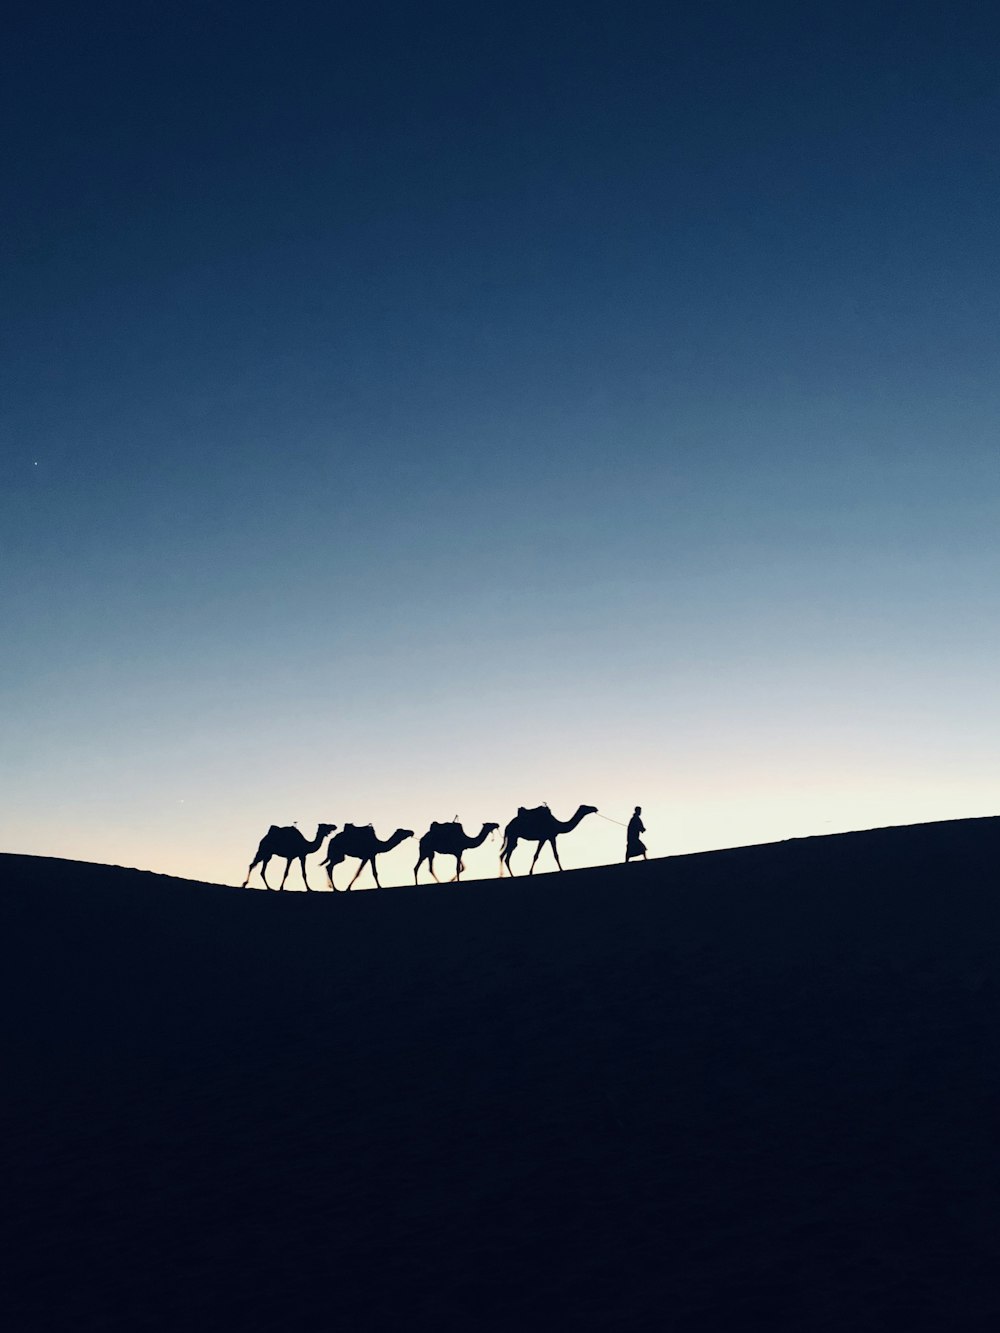 Fotografia della silhouette di quattro cammelli